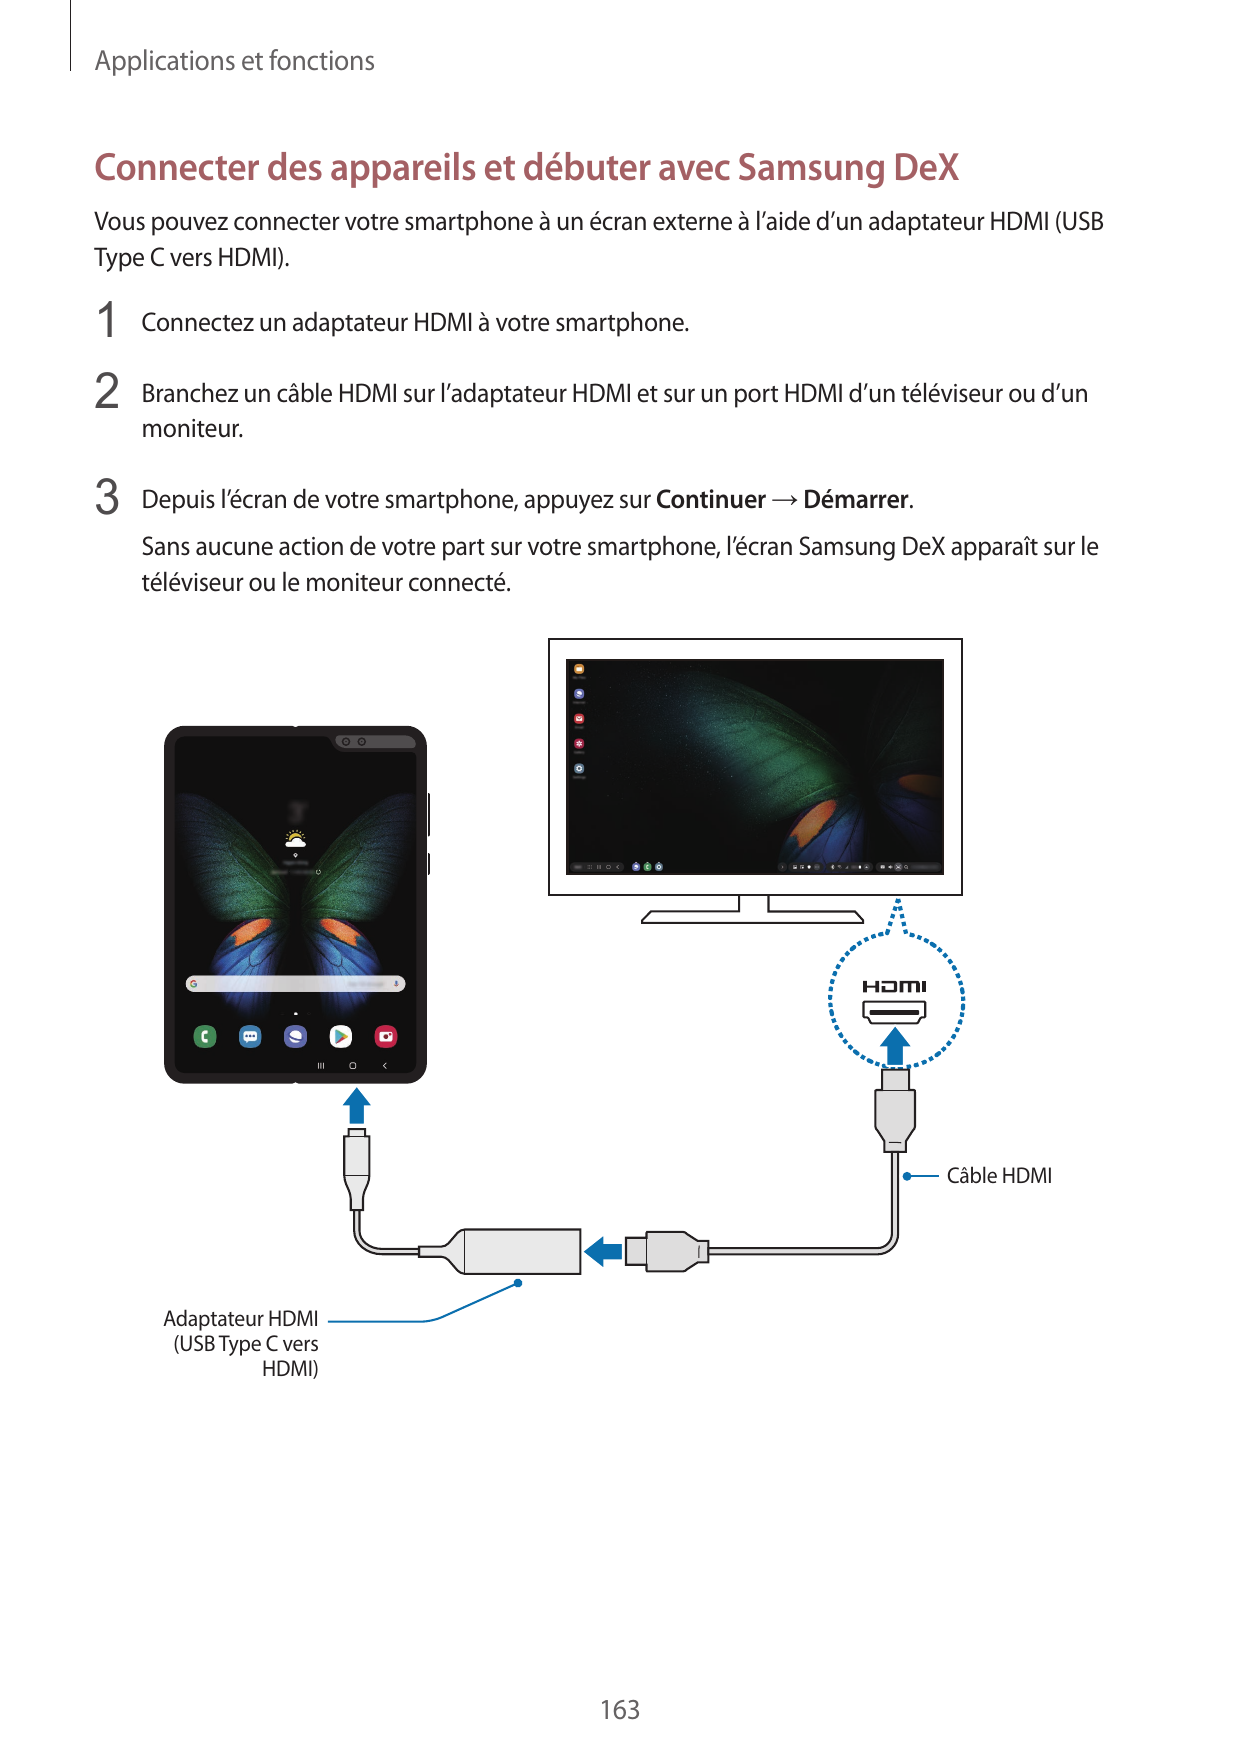 Applications et fonctionsConnecter des appareils et débuter avec Samsung DeXVous pouvez connecter votre smartphone à un écran ex